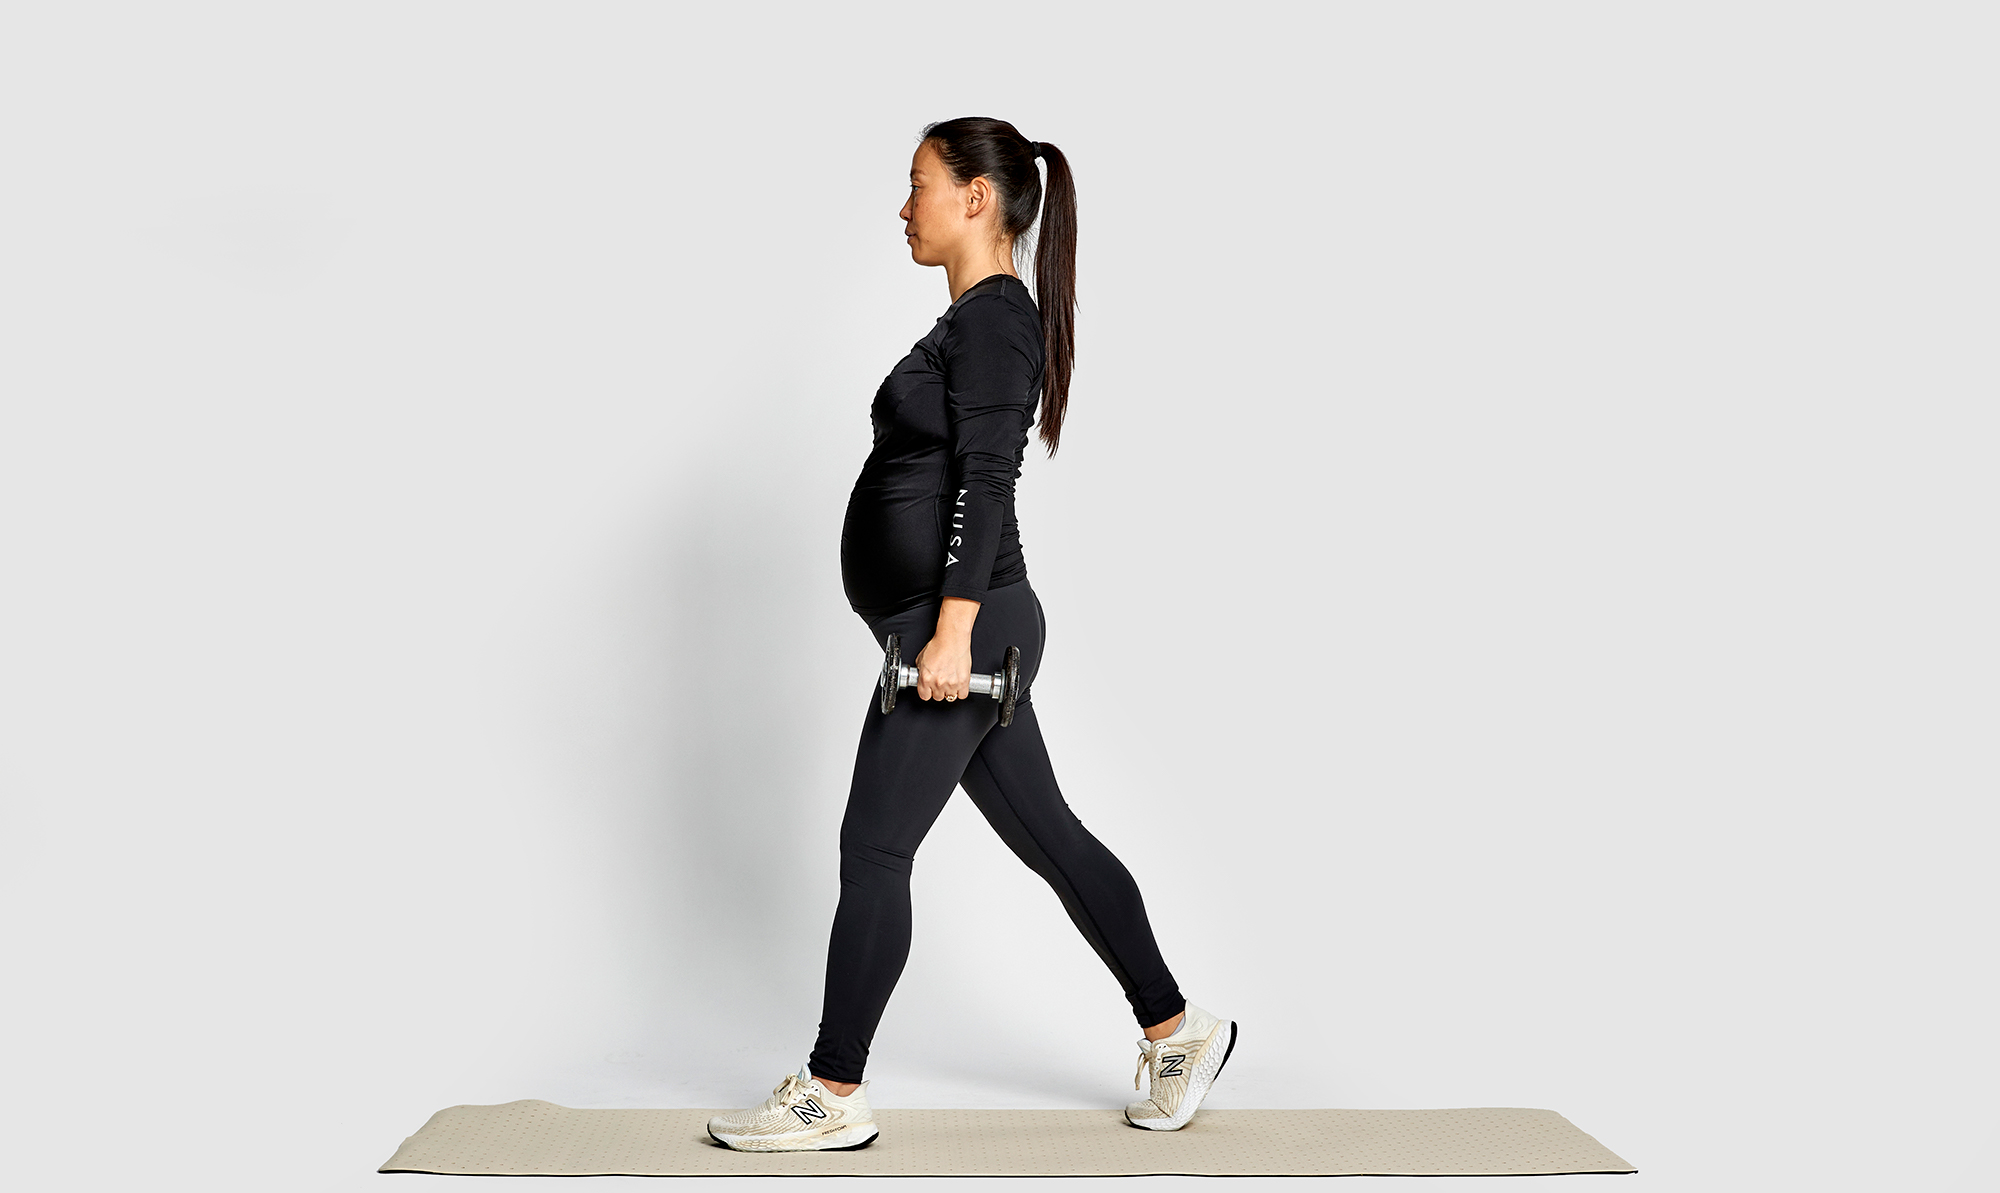 Pligt Konklusion En skønne dag Gravid workout: Her er 40 minutters træning til dig med mave - ALT.dk